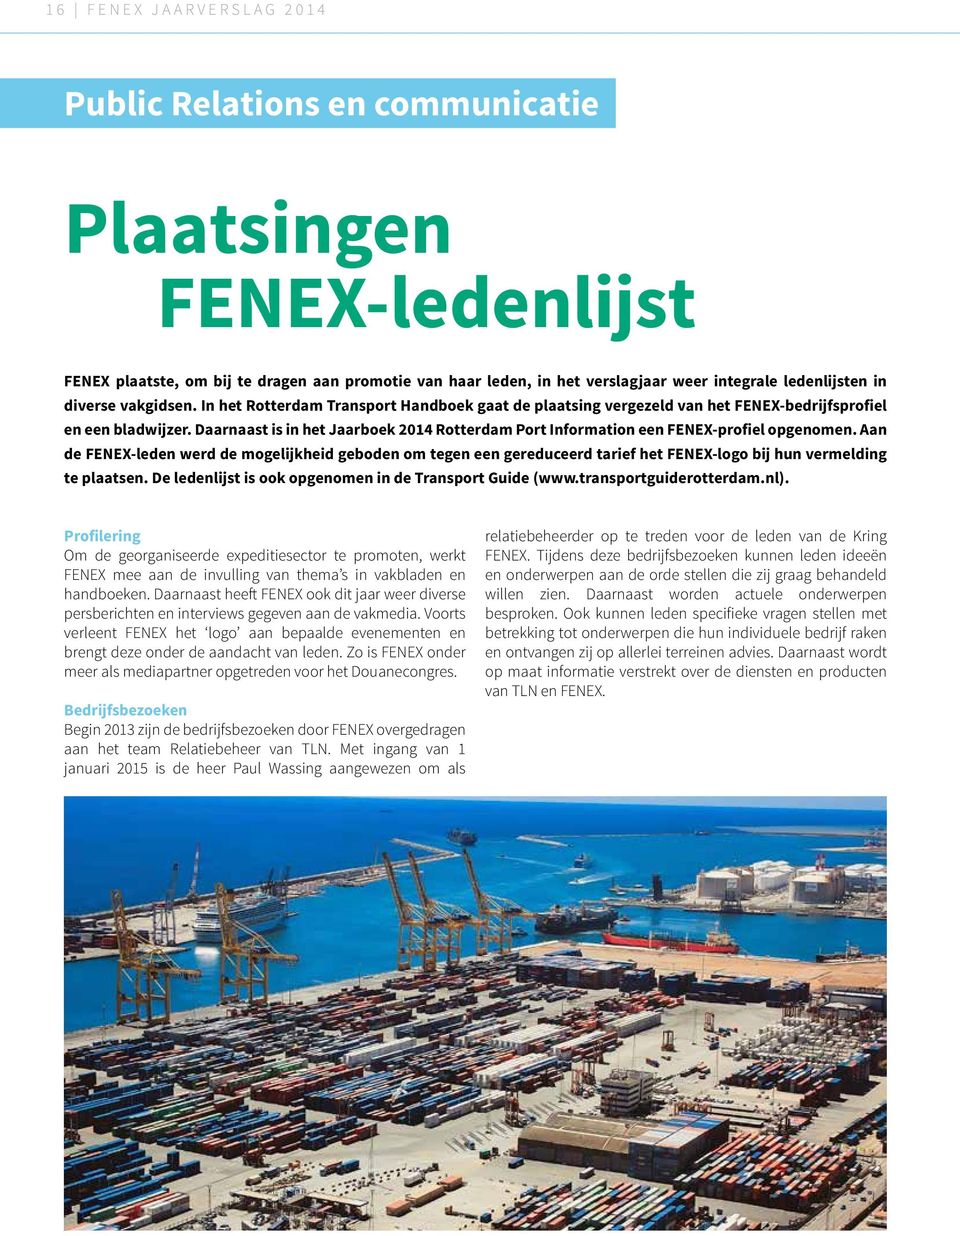 Daarnaast is in het Jaarboek 2014 Rotterdam Port Information een FENEX-profiel opgenomen.